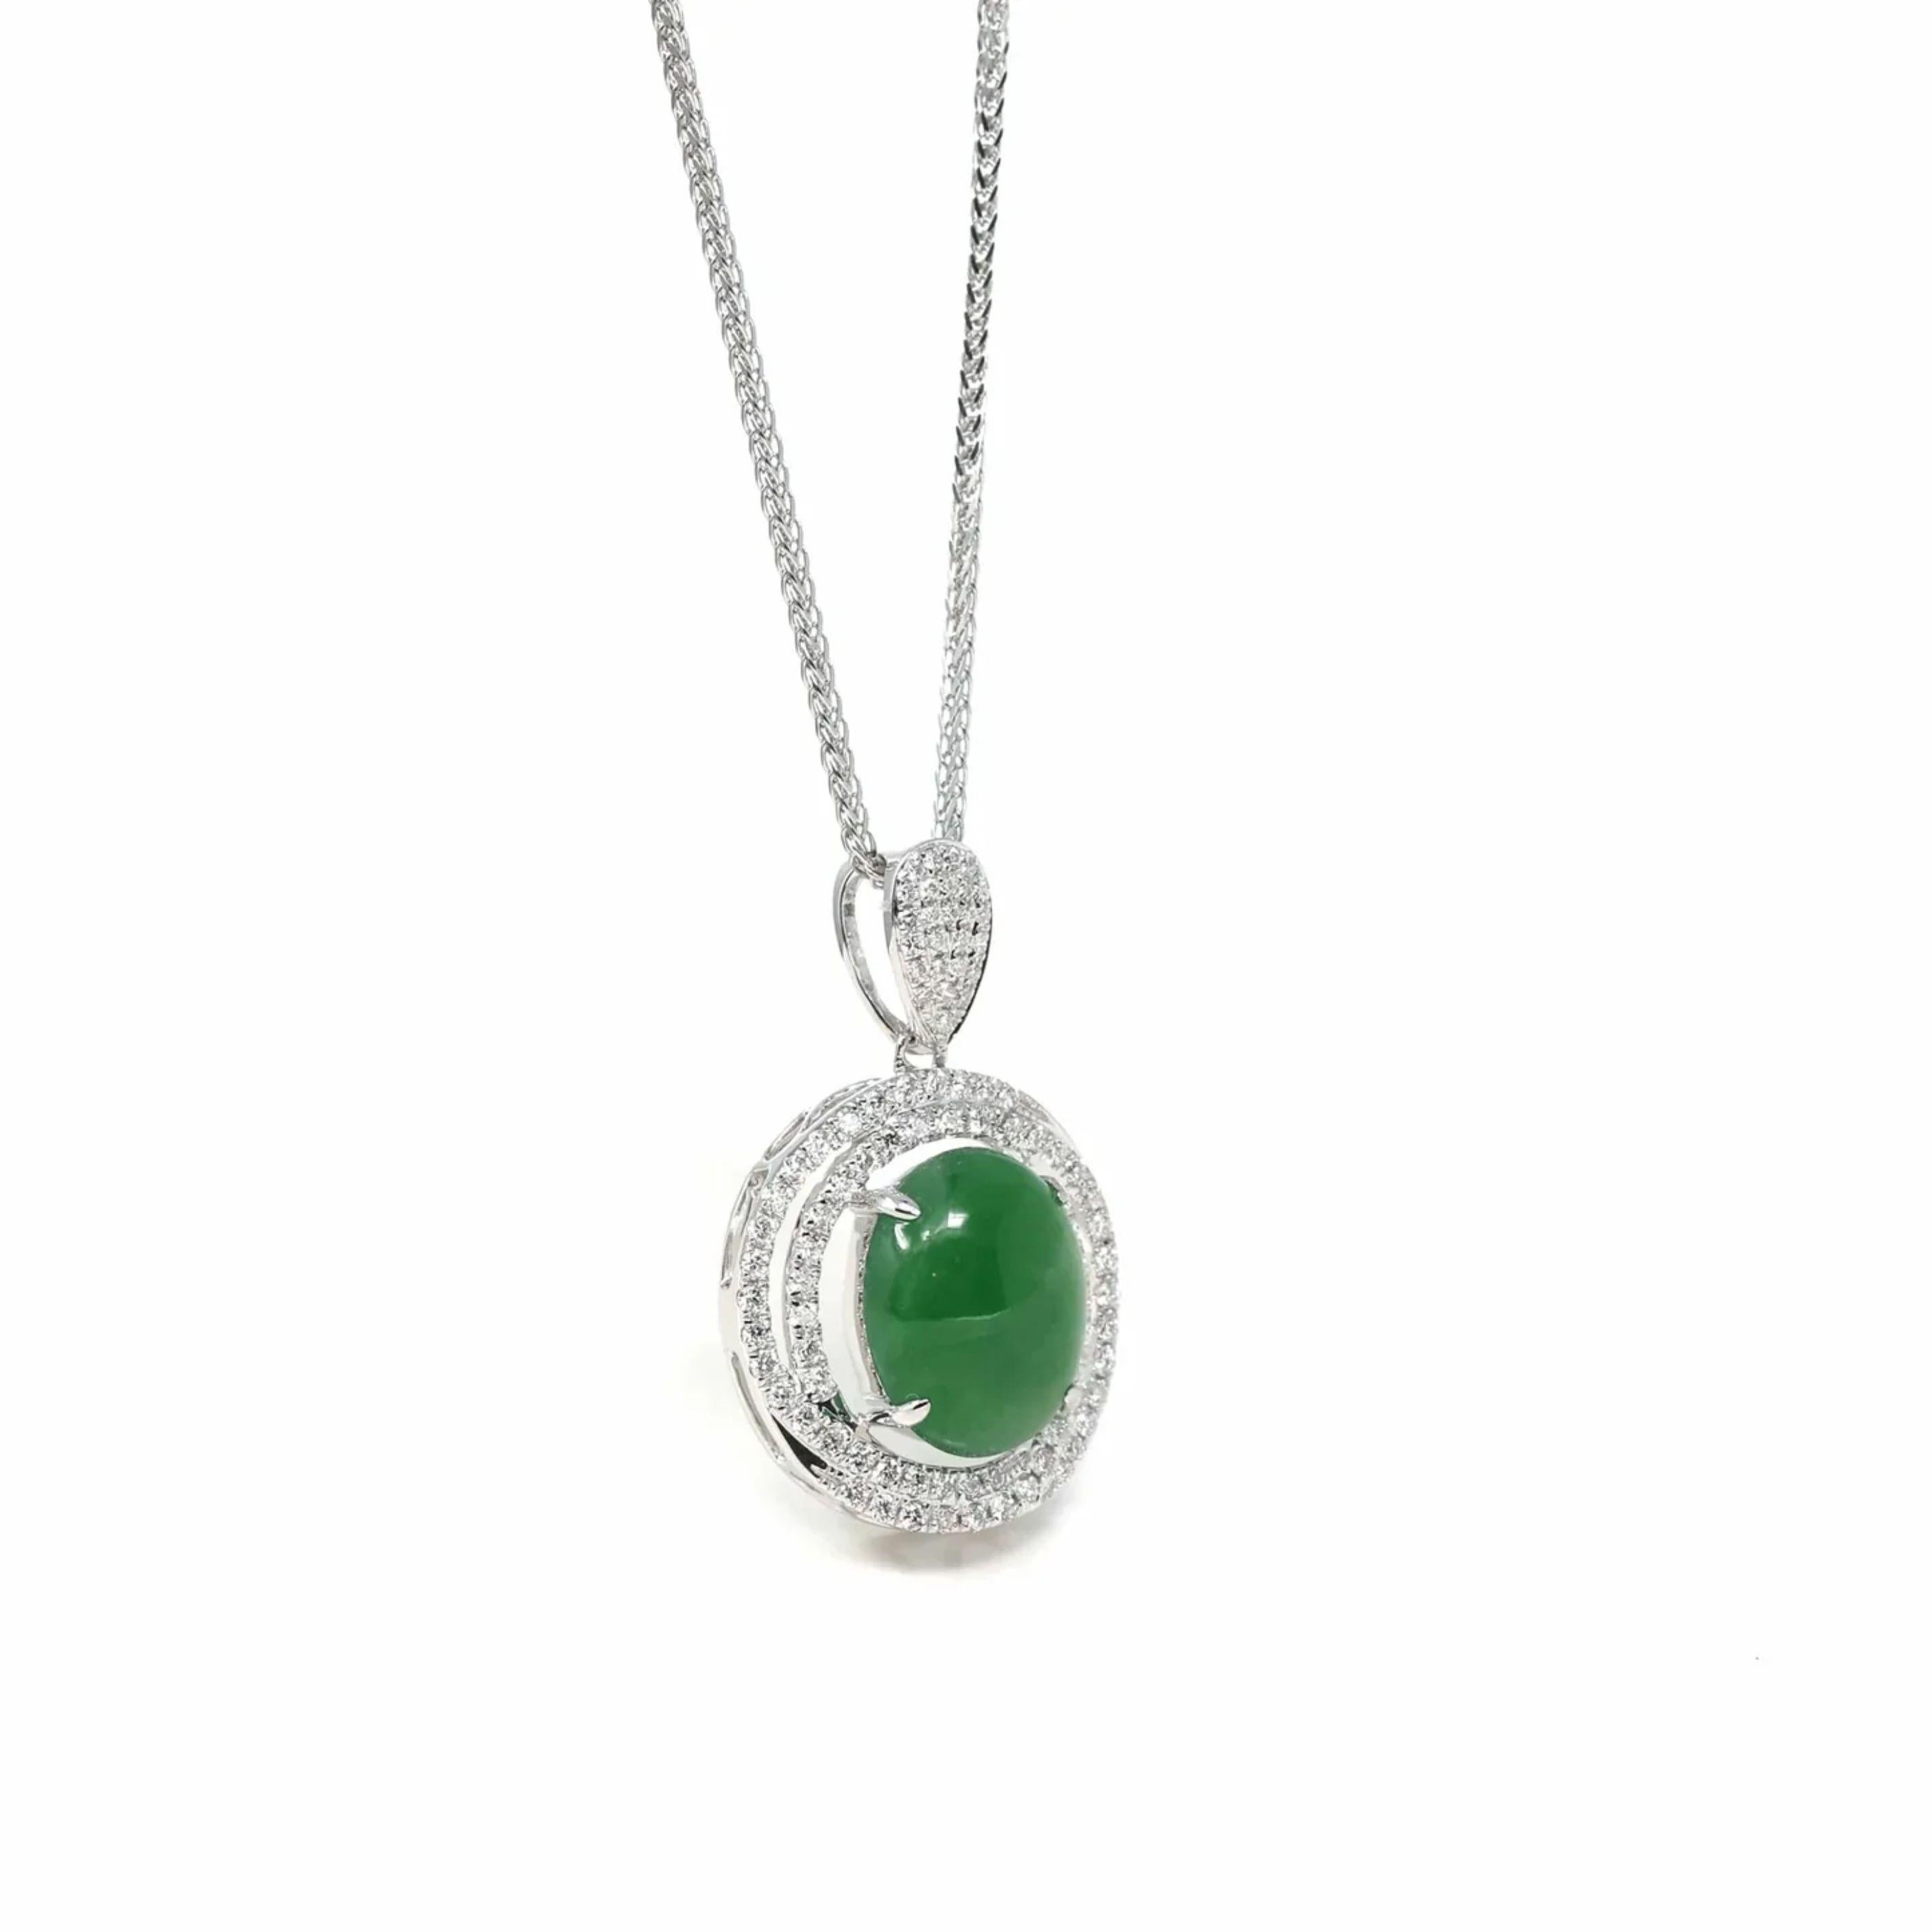 * DESIGNKONZEPT--- Diese Halskette ist etwas ganz Besonderes, gefertigt aus einem atemberaubenden Stück kaiserlicher grüner Jadeit-Jade. Wie auf dem Foto zu sehen, ist die Durchsichtigkeit der Jade atemberaubend. Umgeben von Diamanten mit der Farbe